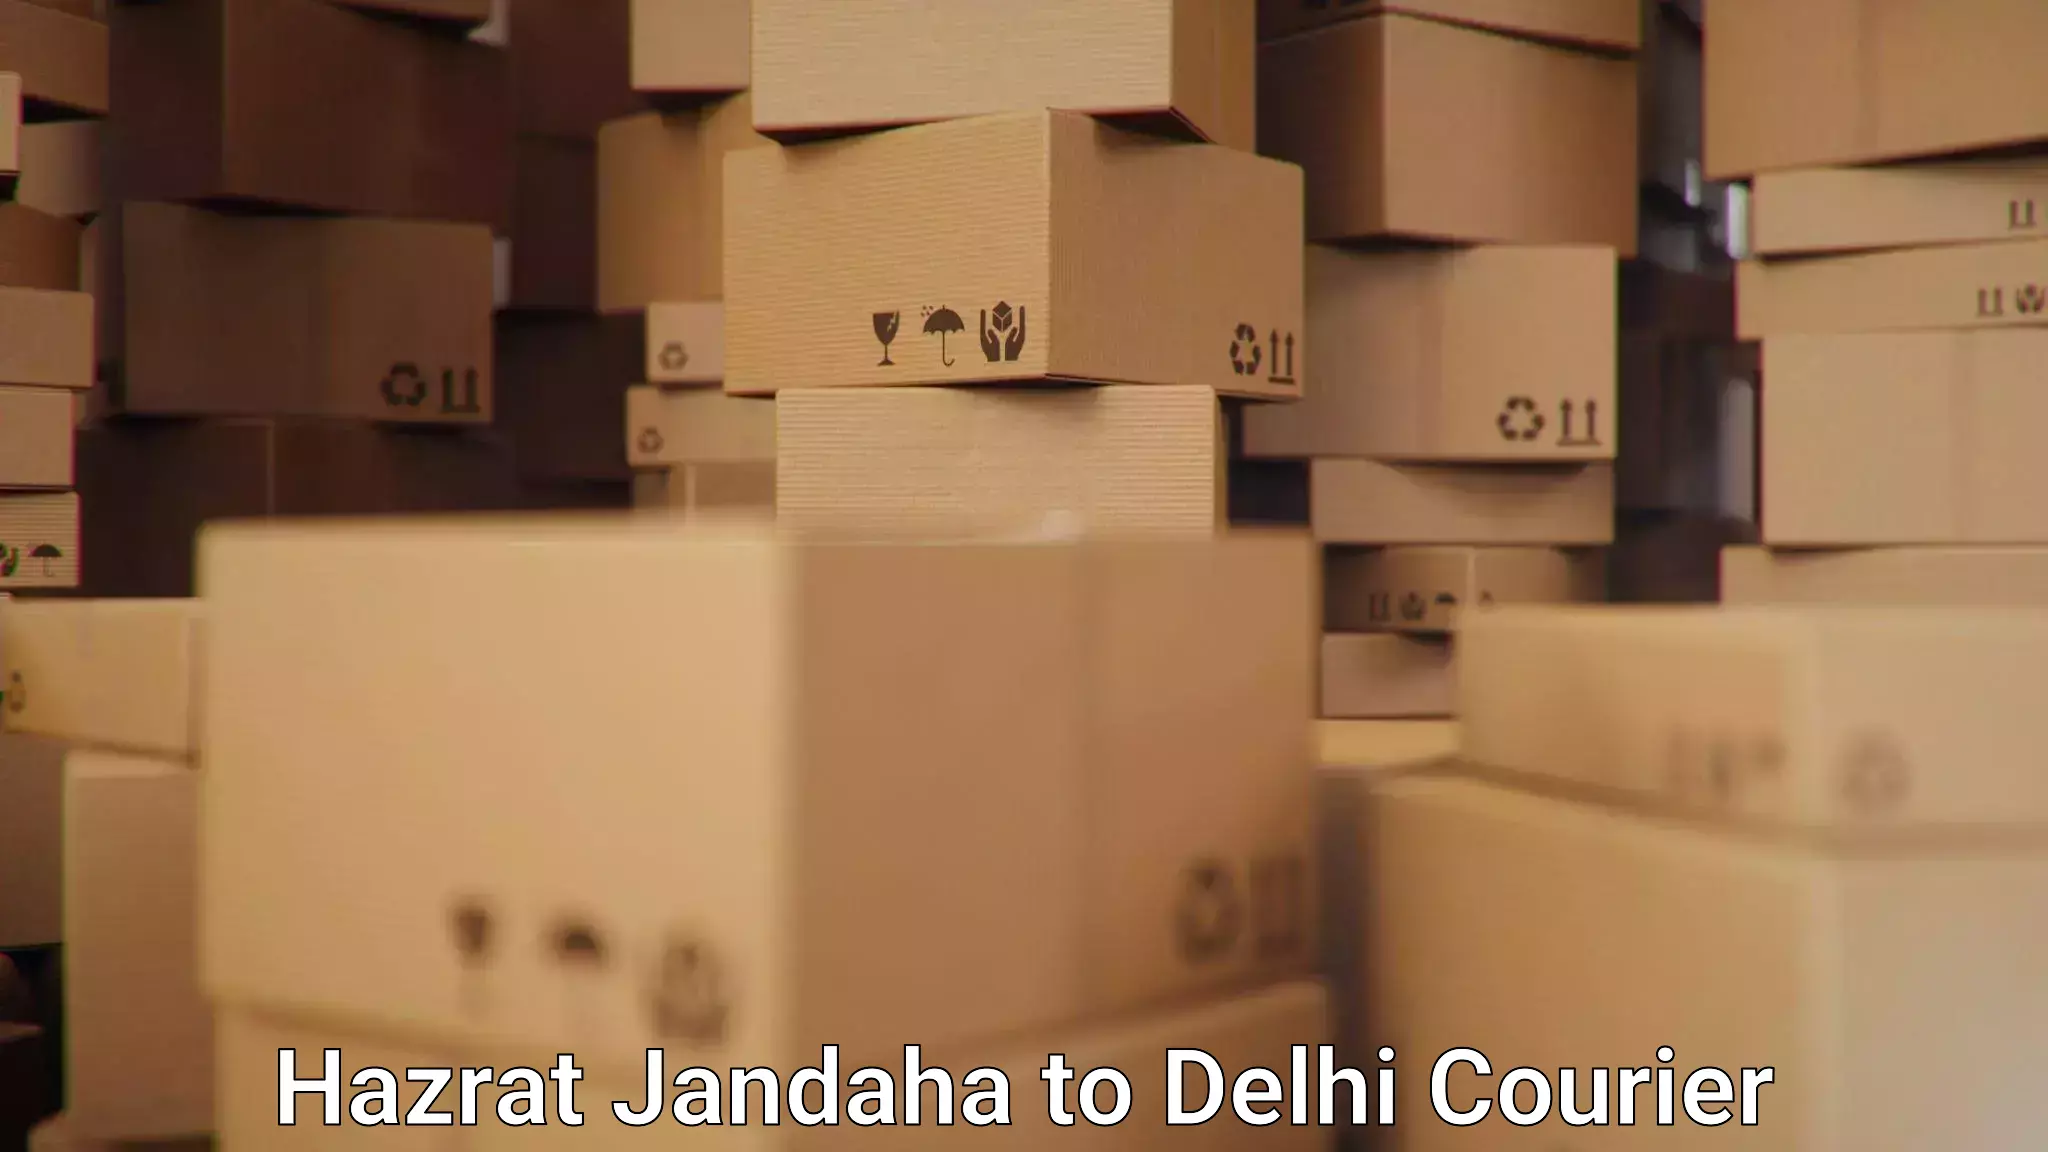 Efficient parcel delivery Hazrat Jandaha to Delhi